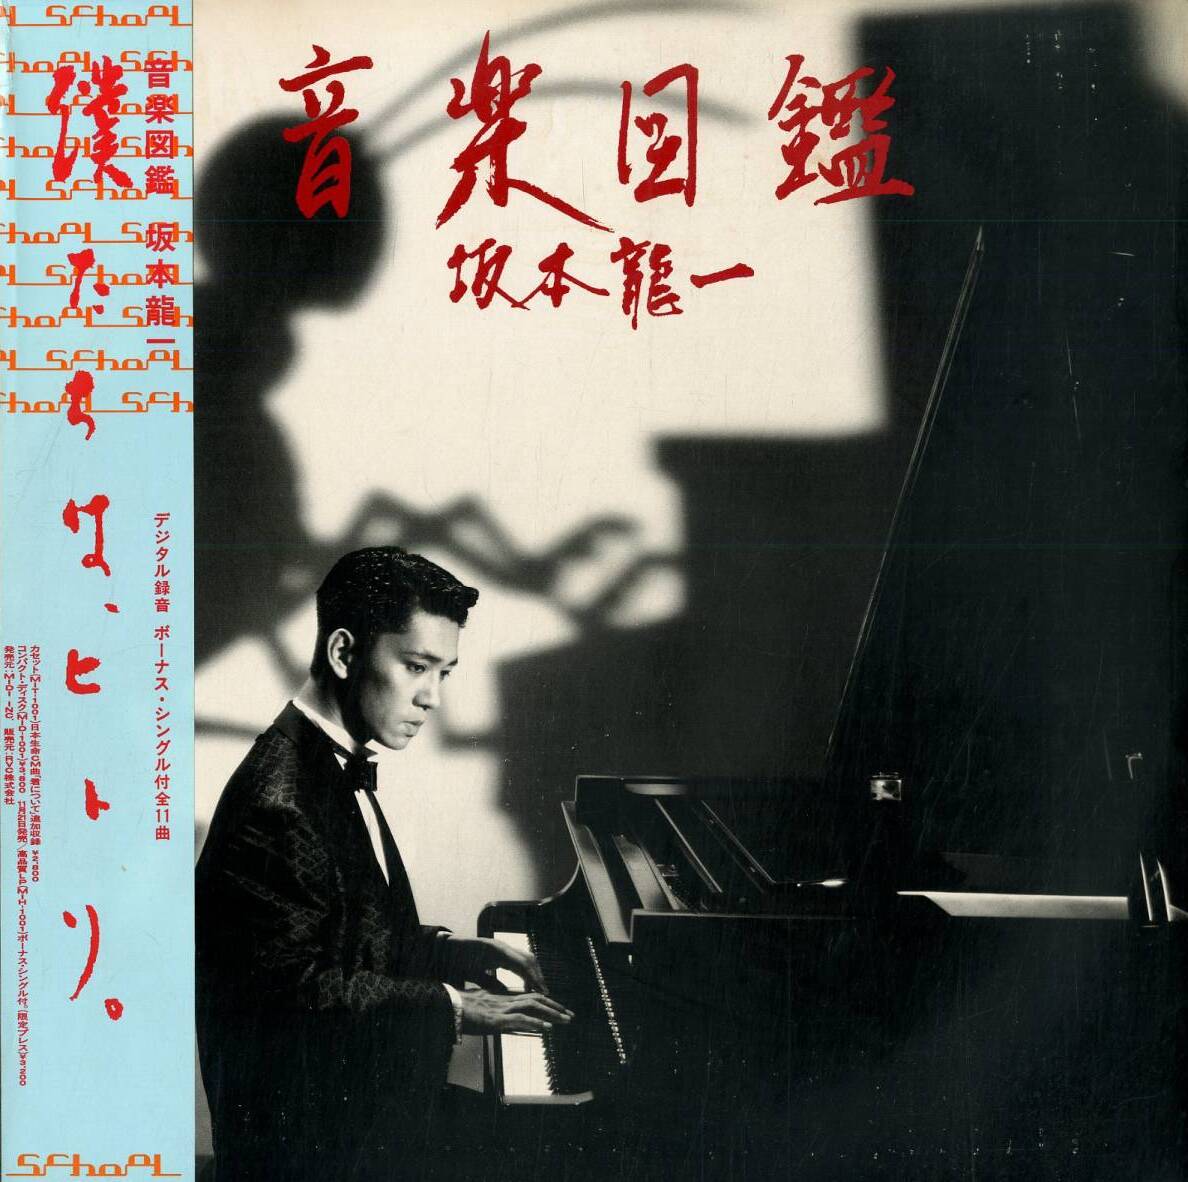 Ryuichi Sakamoto 音楽図鑑 (Ongaku zukan) cover artwork